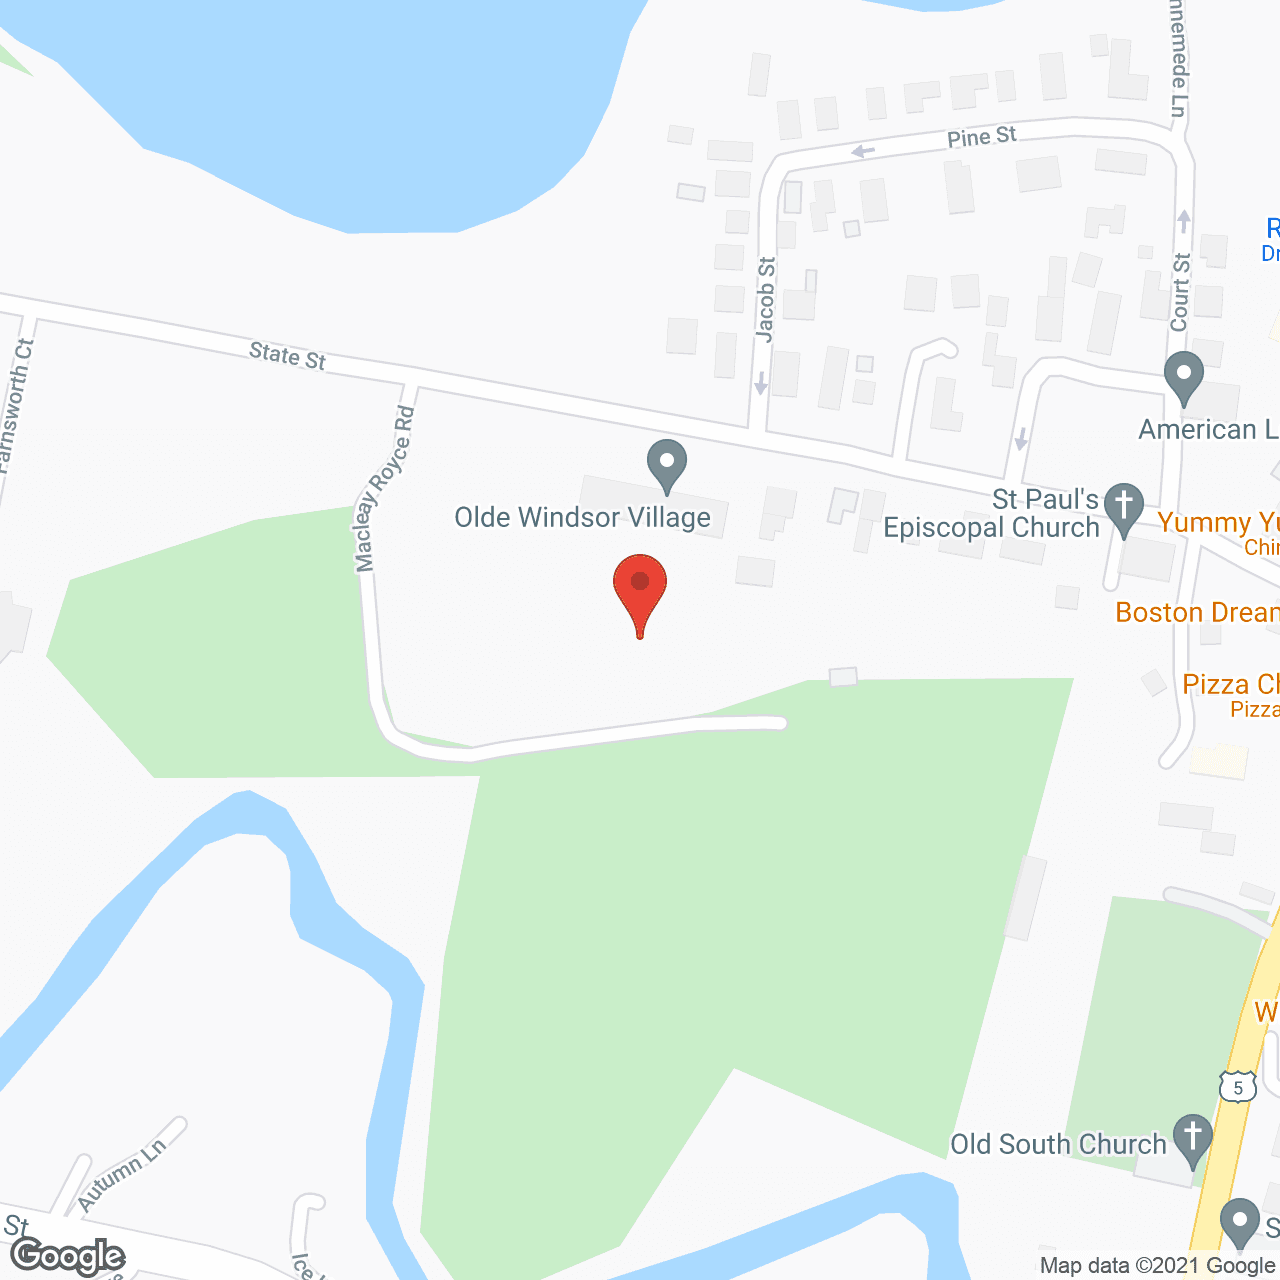 Olde Windsor Village in google map